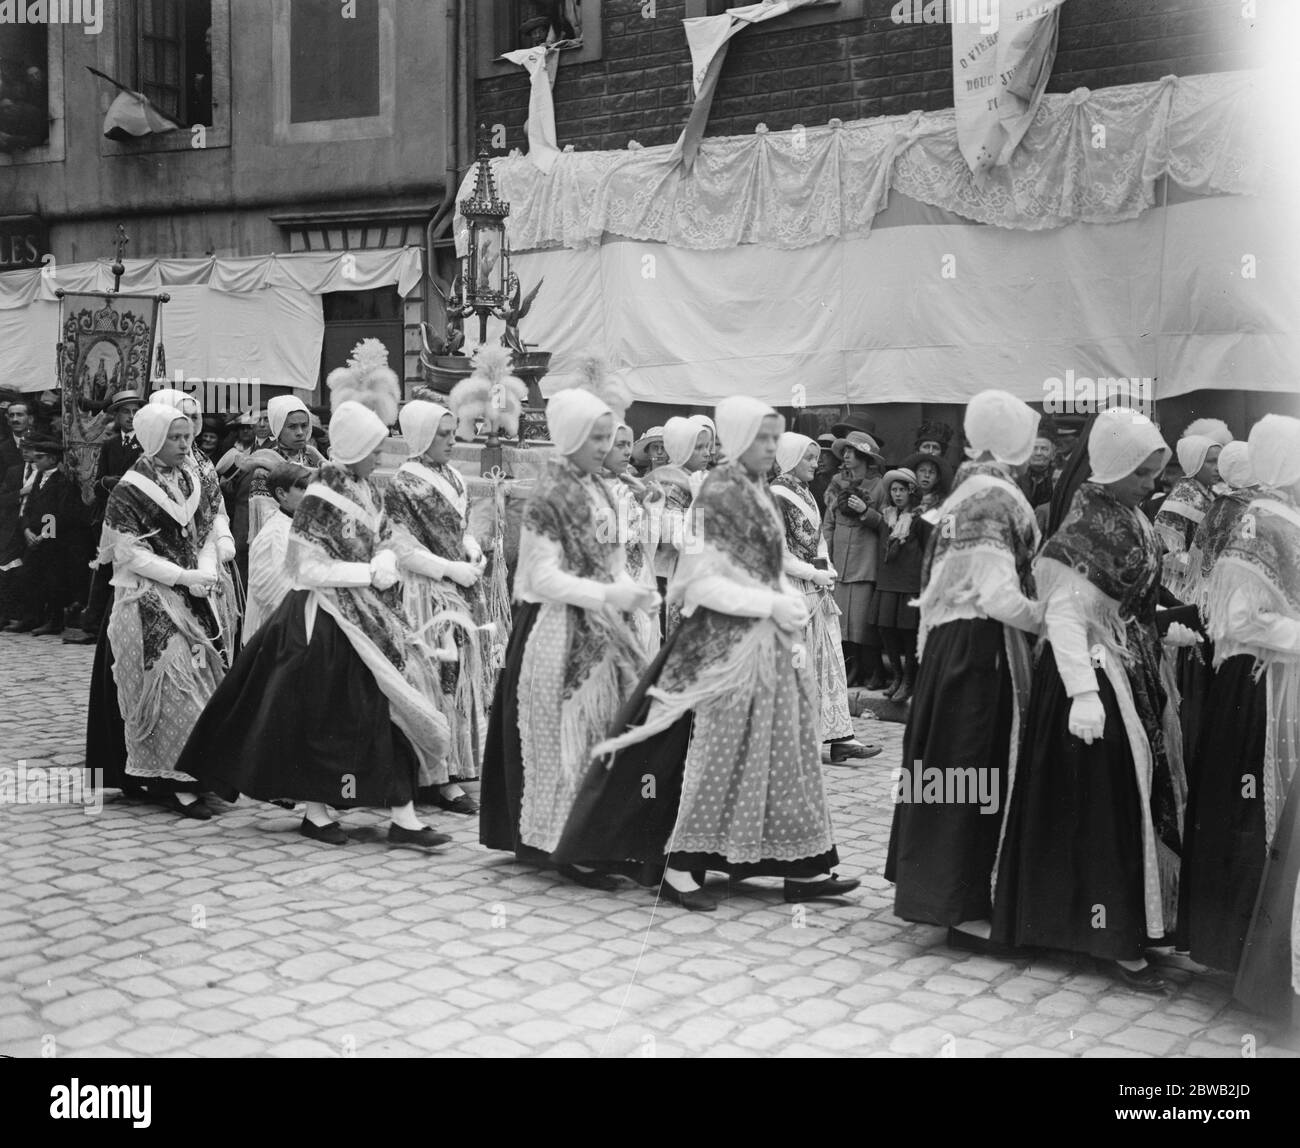 Boulogne Francia, Procesión de nuestra Señora de Boulogne pescadores de Boulogne en la procesión llevando su santuario especial de nuestra Señora de Boulogne 21 de agosto de 1920 Foto de stock